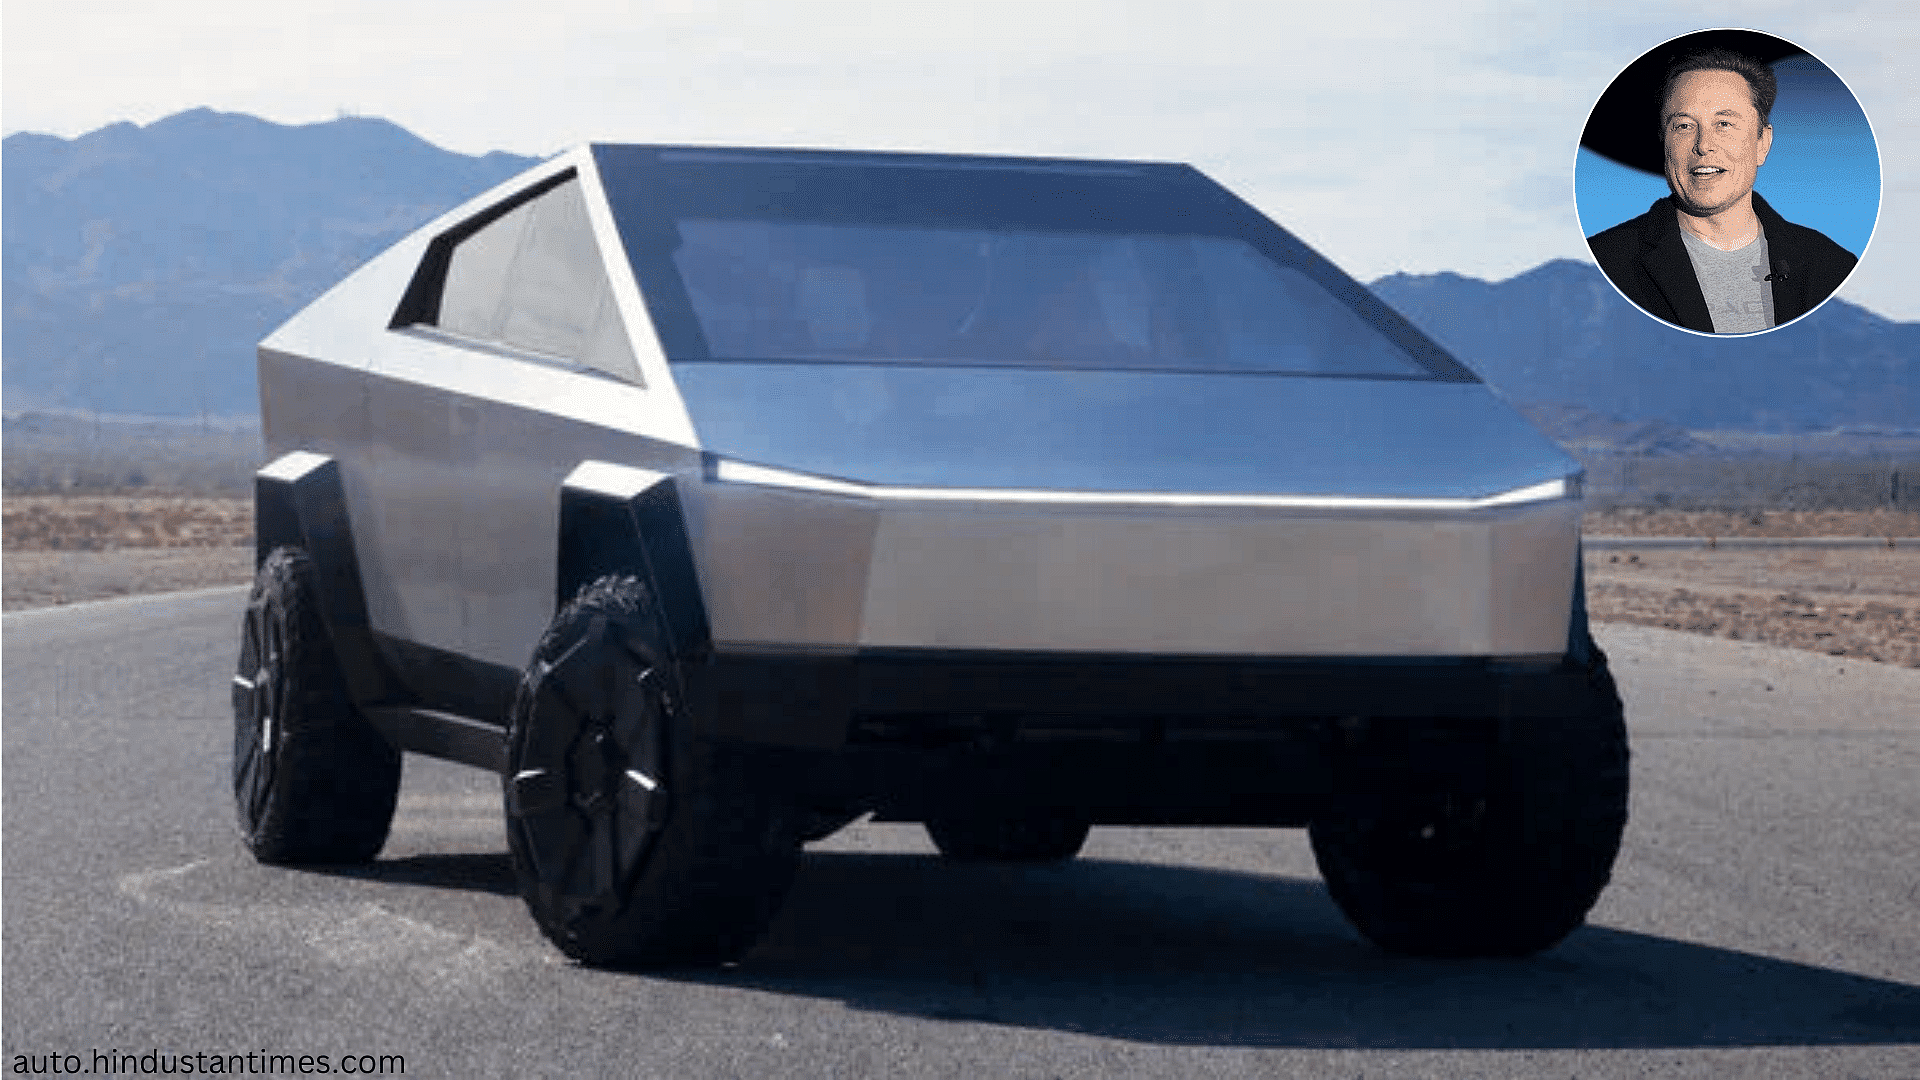 Elon Musk’s 2020 silver Tesla Cybertruck